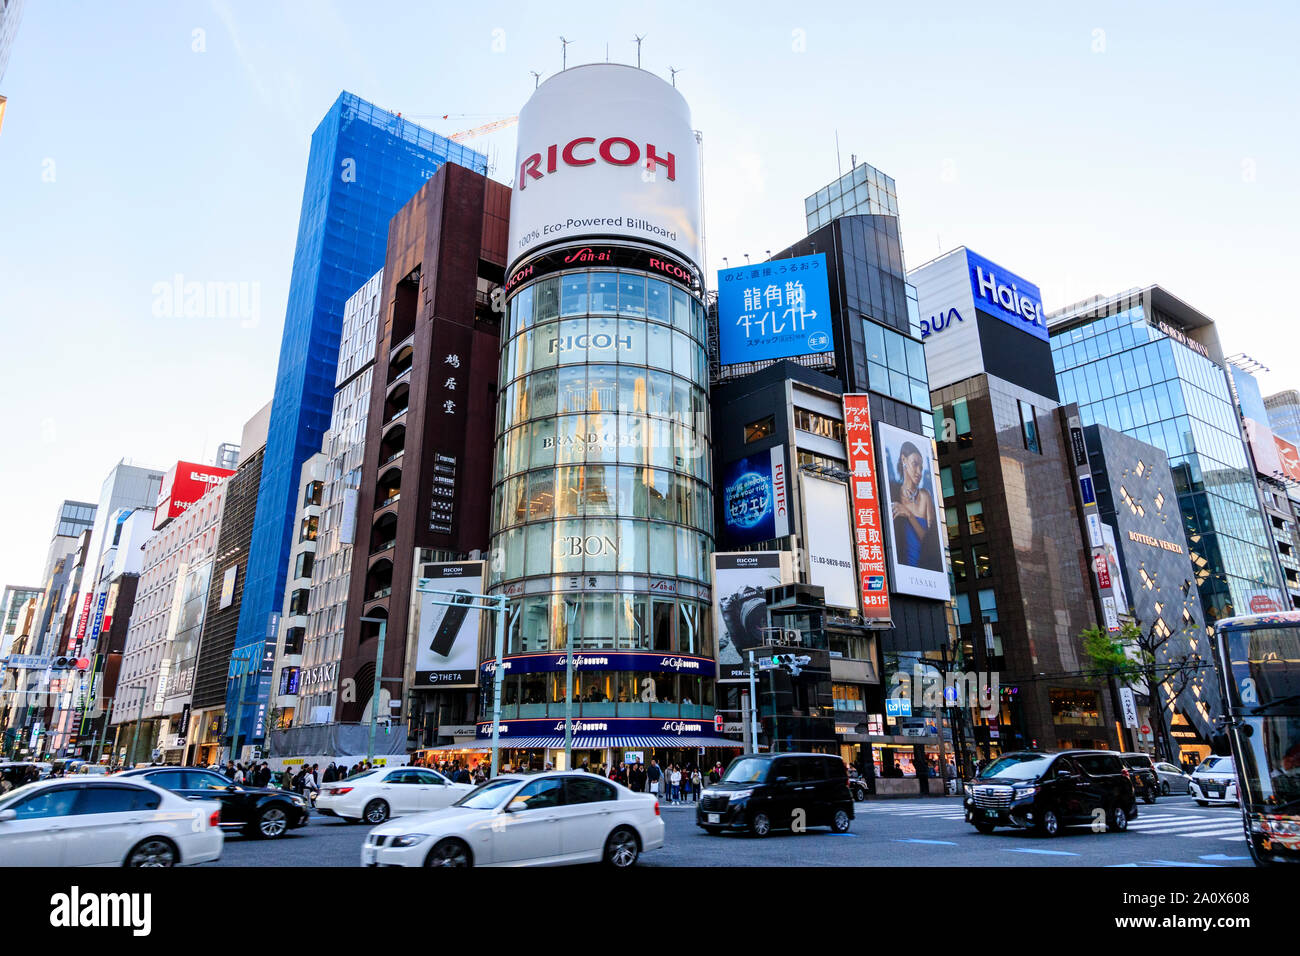 Tokyo, Ginza, en horario diurno. 4-chome intersección, autos pasando, con una fachada de vidrio San-ai, alias el EDIFICIO edificio de Ricoh, con su famoso billboard. Foto de stock